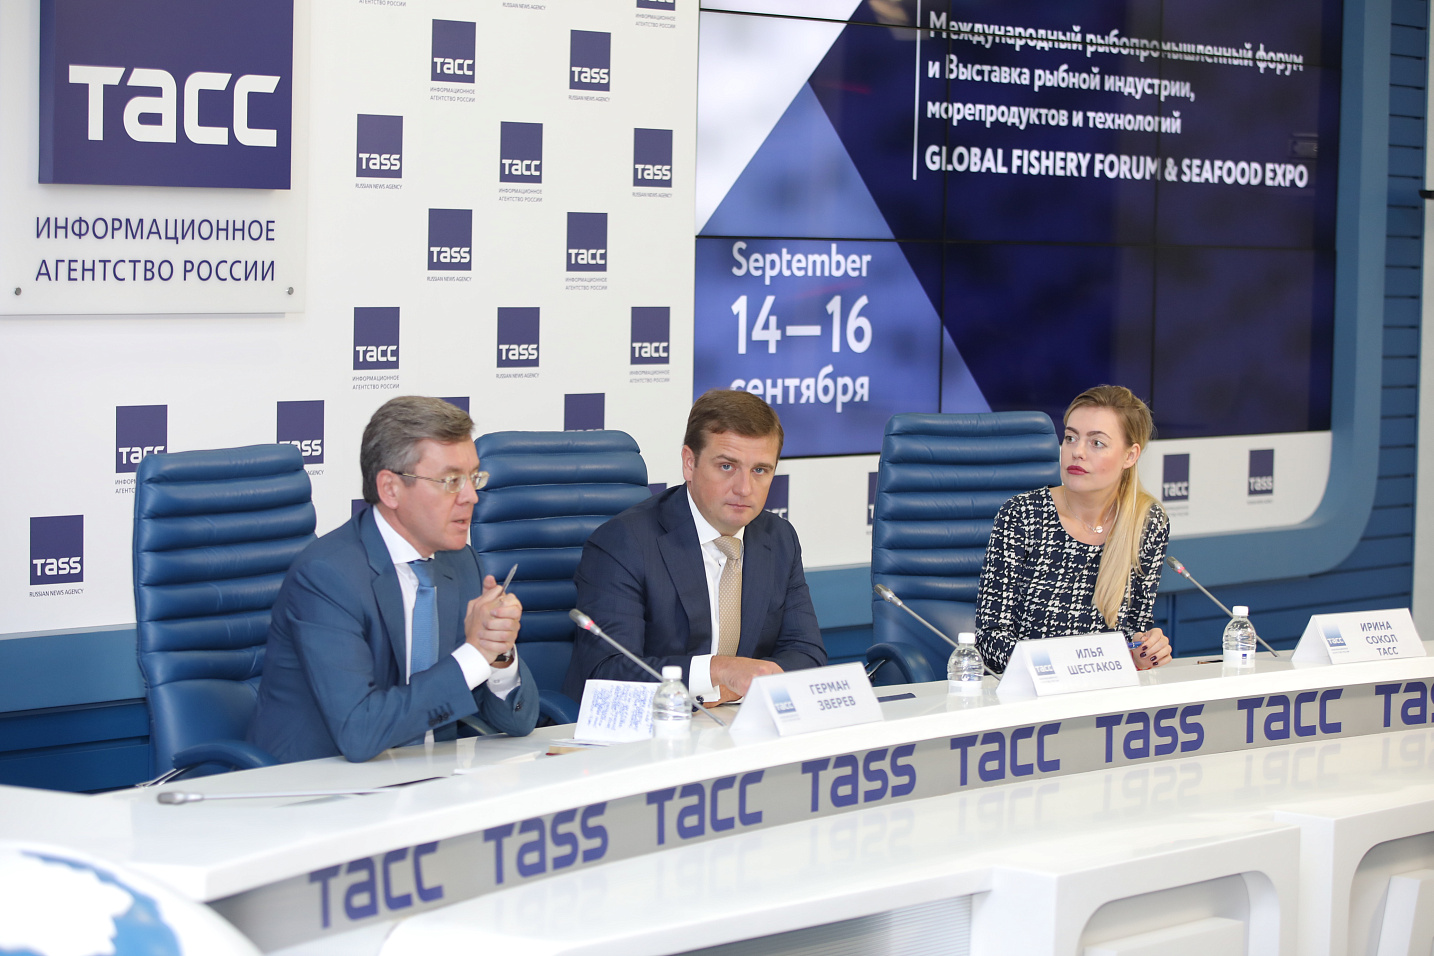 Илья Шестаков: Форум задаст новый формат общения в рыбной отрасли